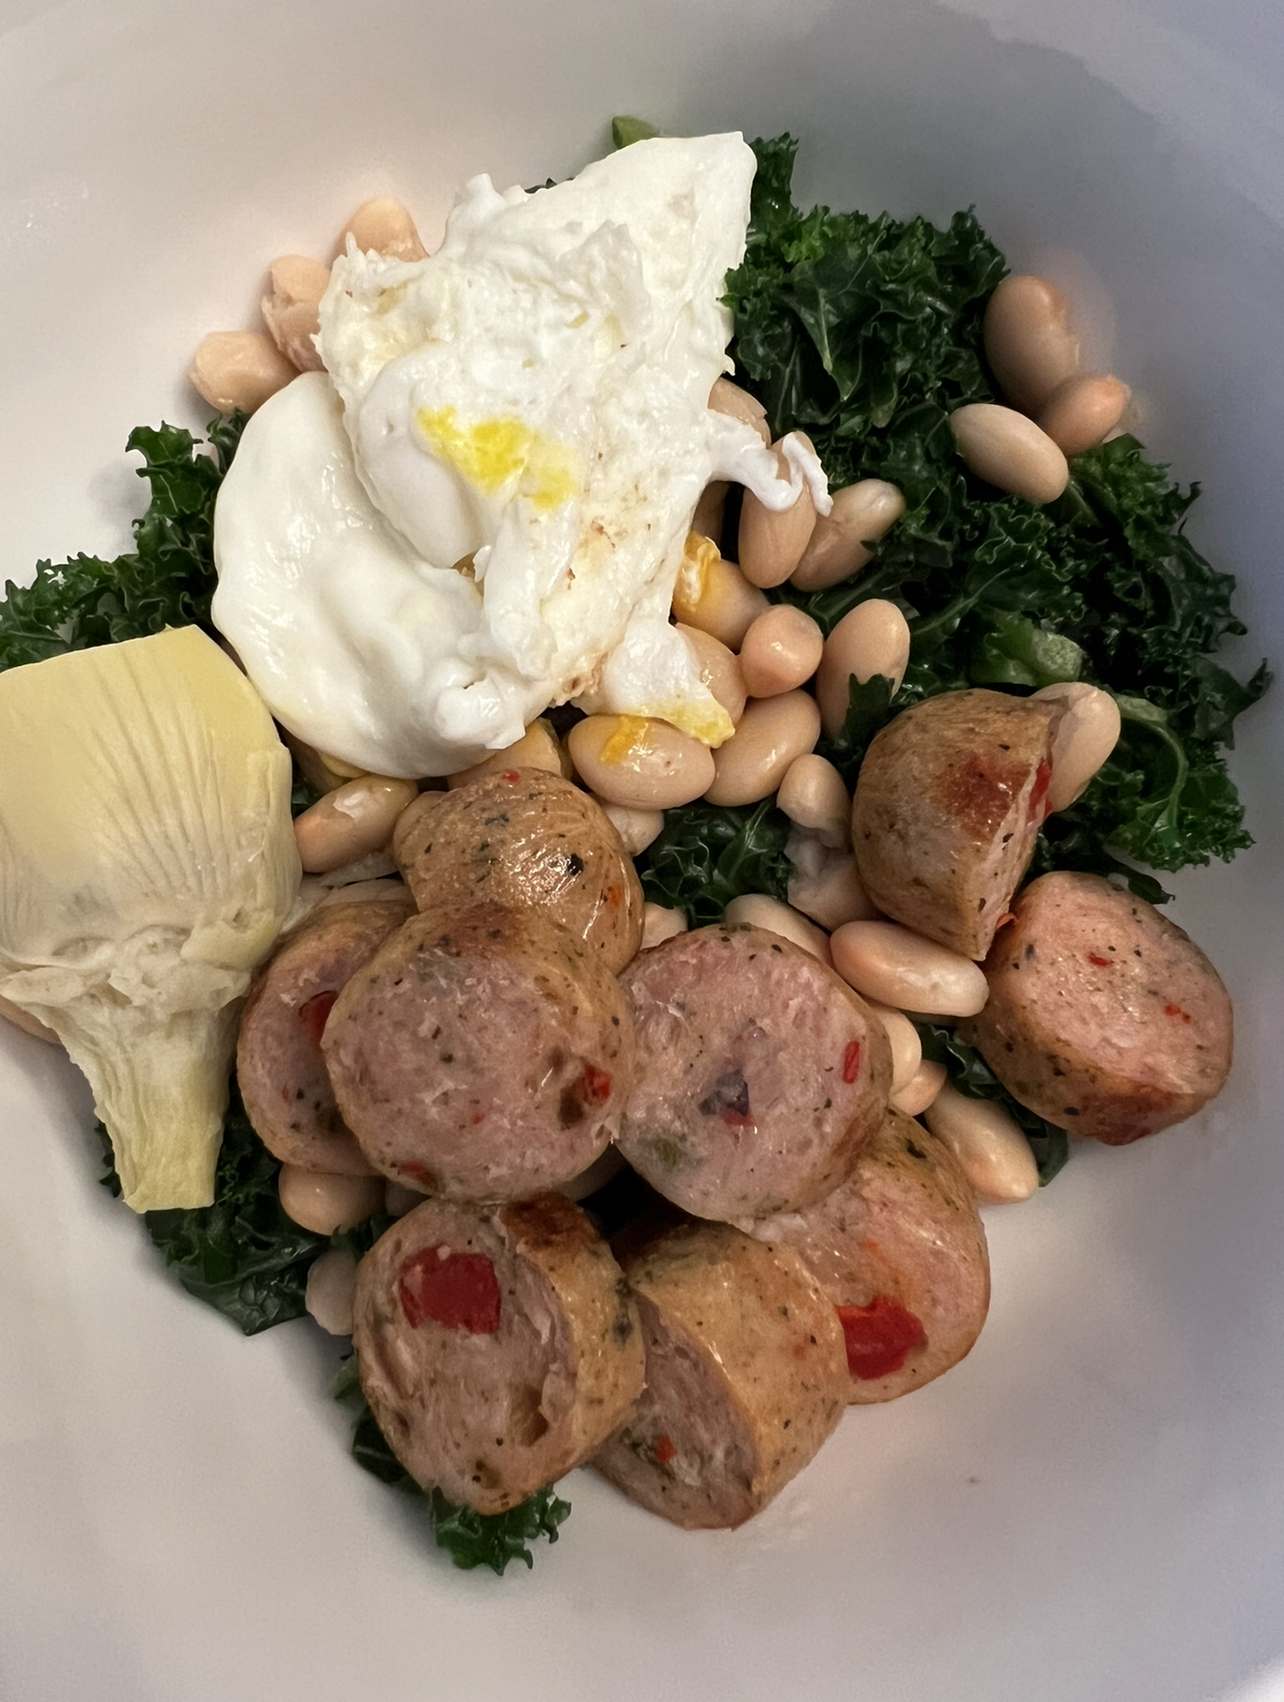 sausage, eggs, kale, artichokes, beans